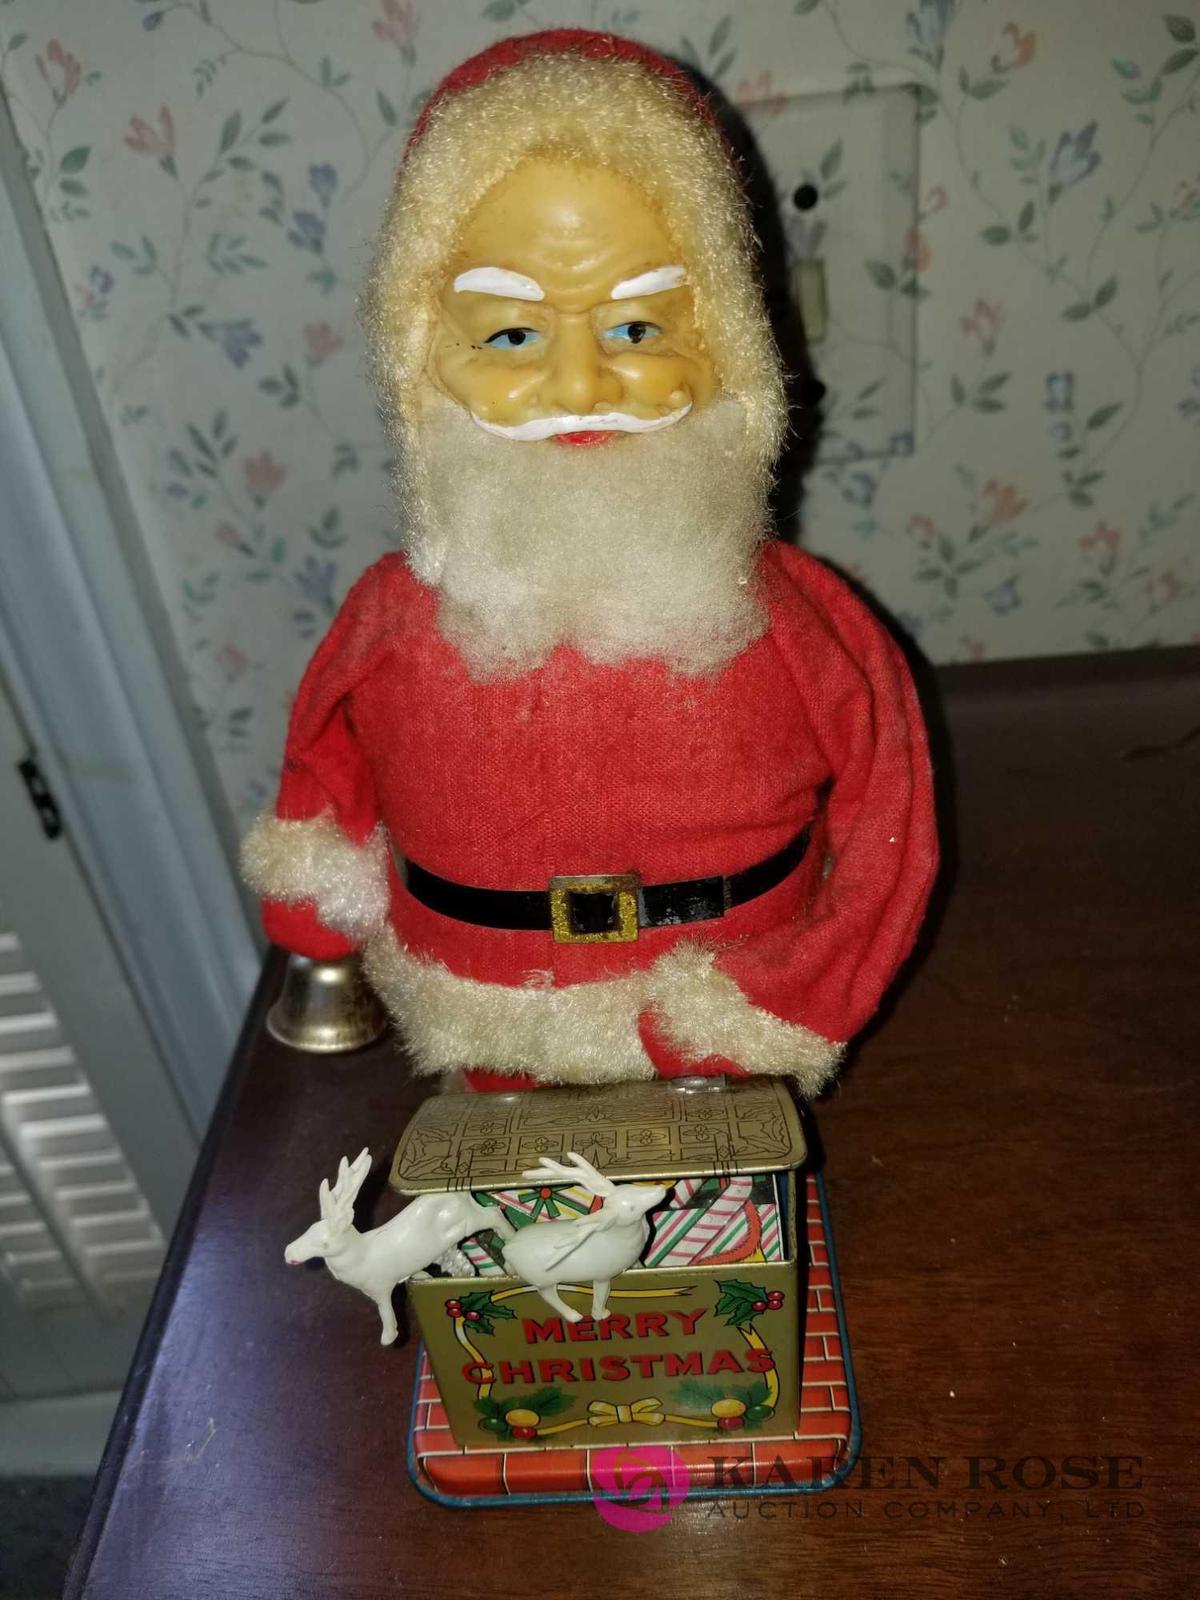 Vintage wind up Santa